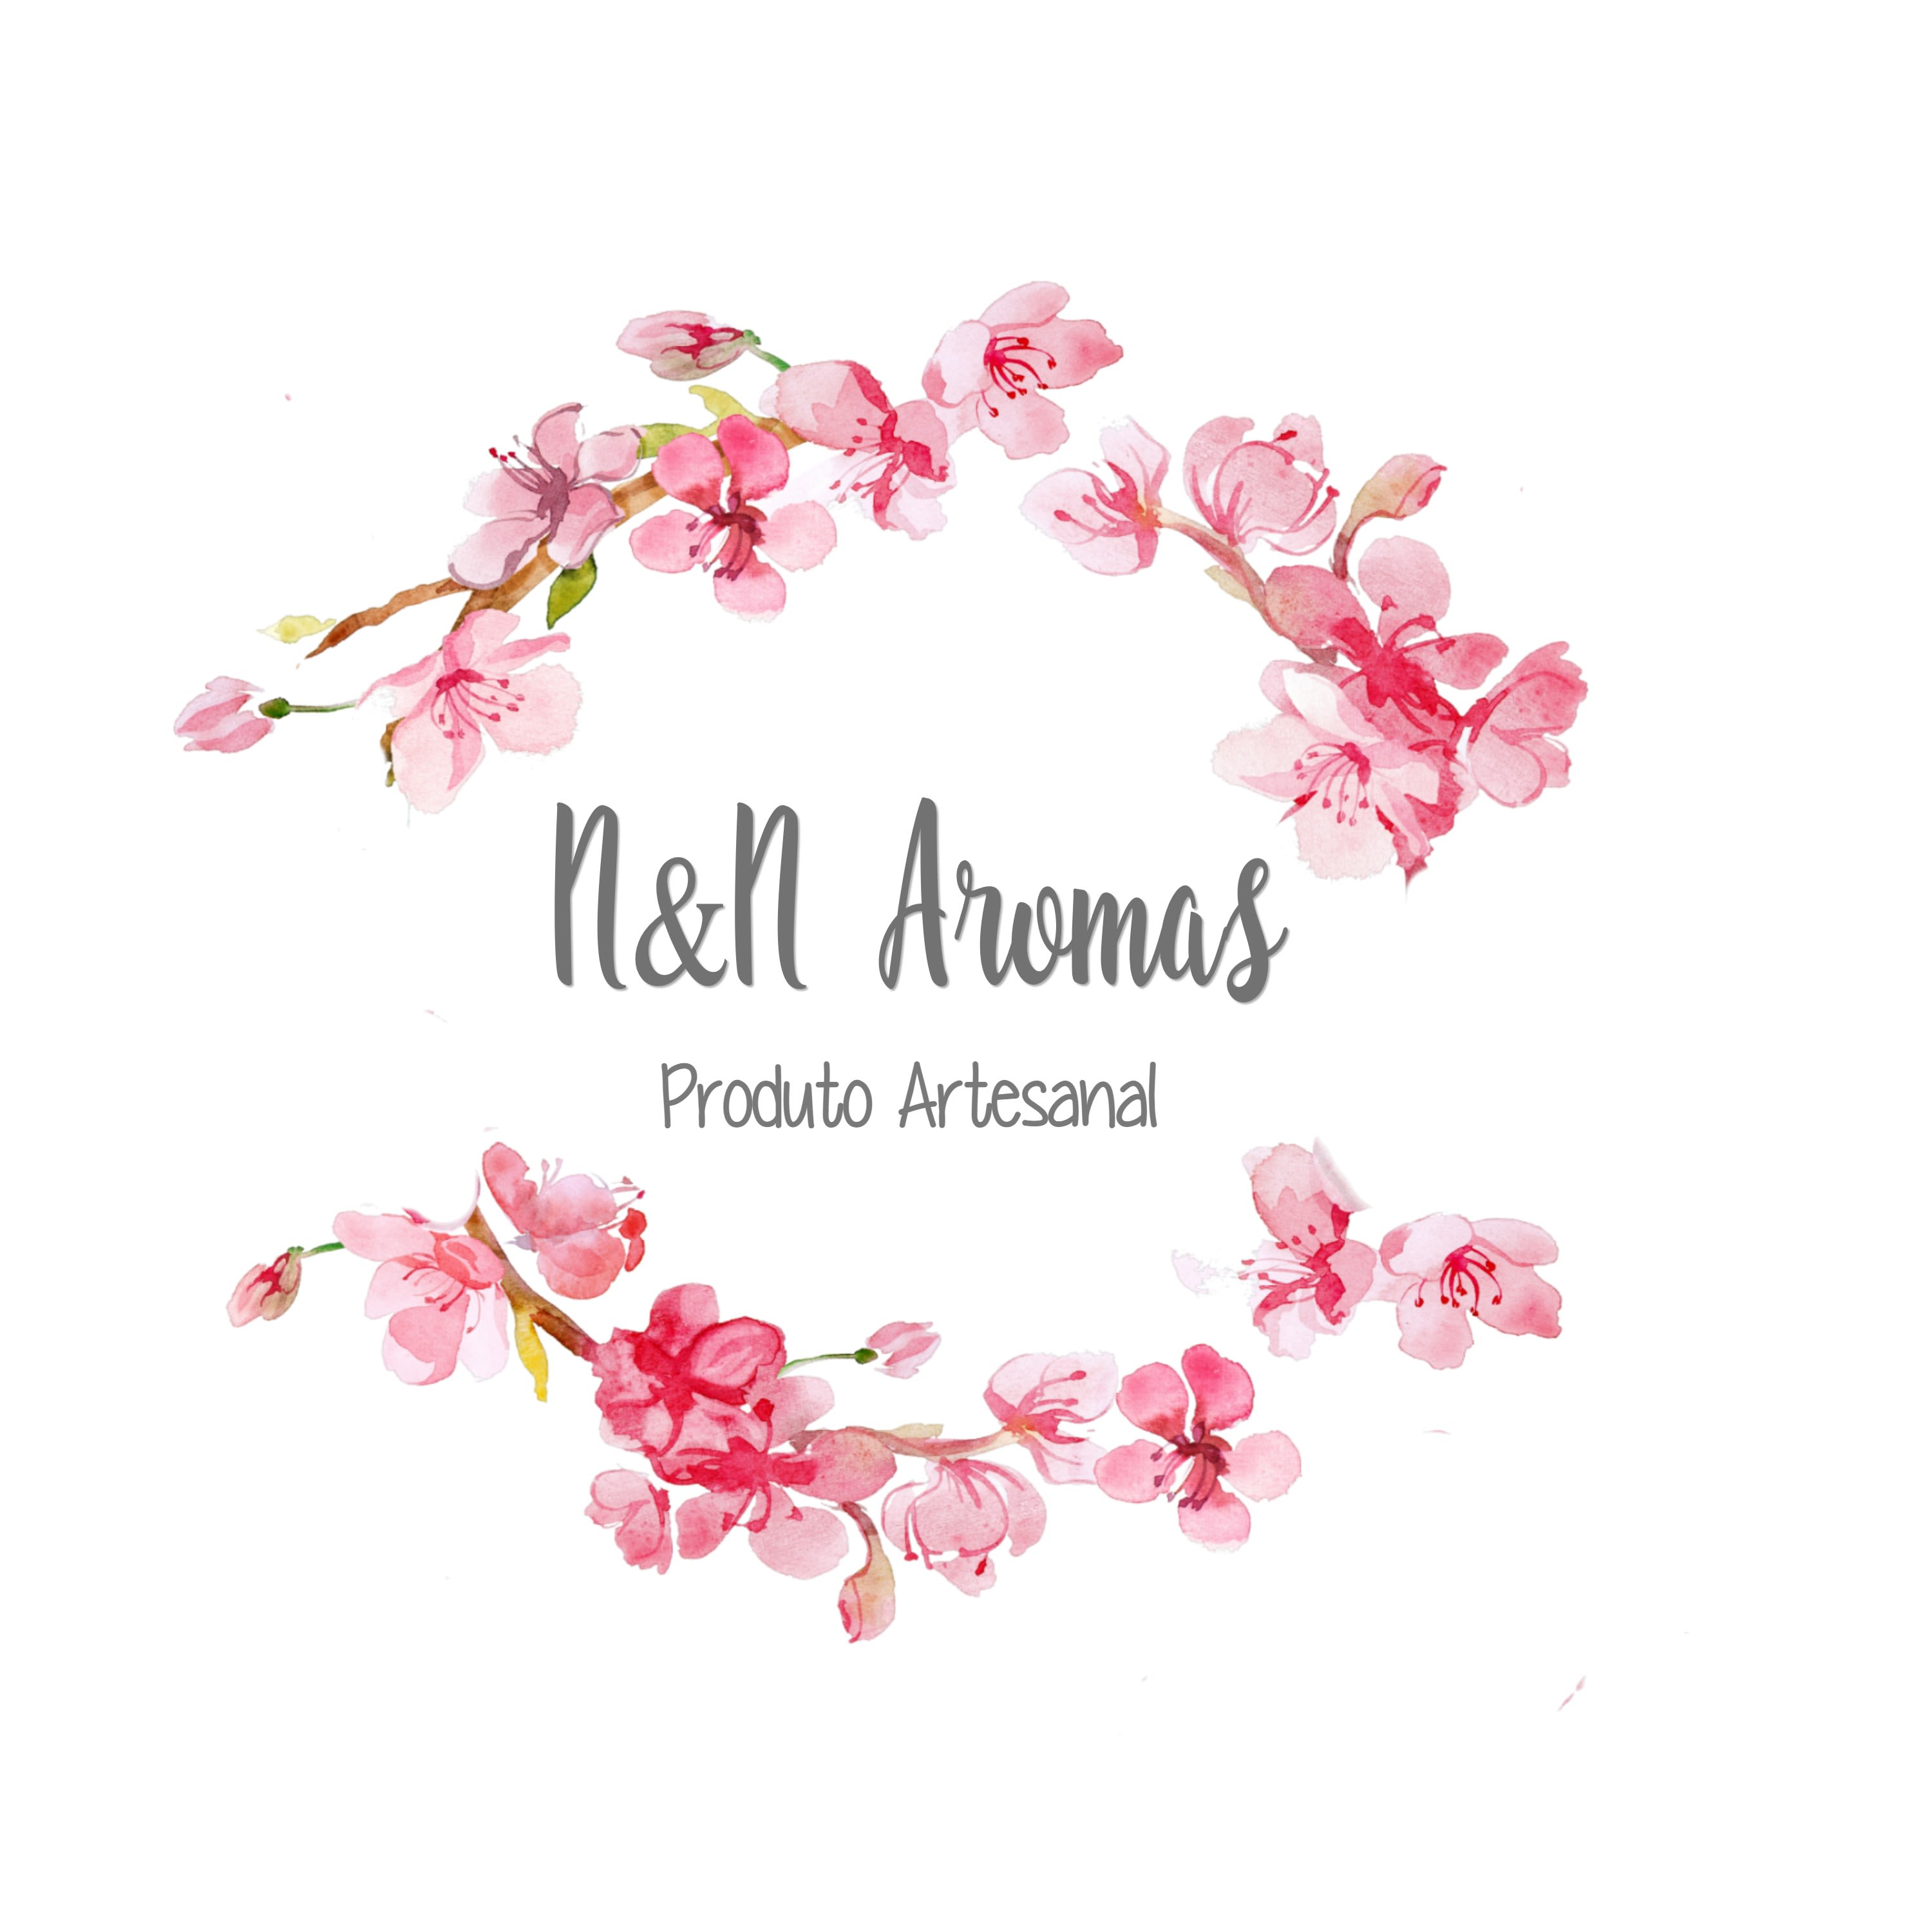 N & N Aromas